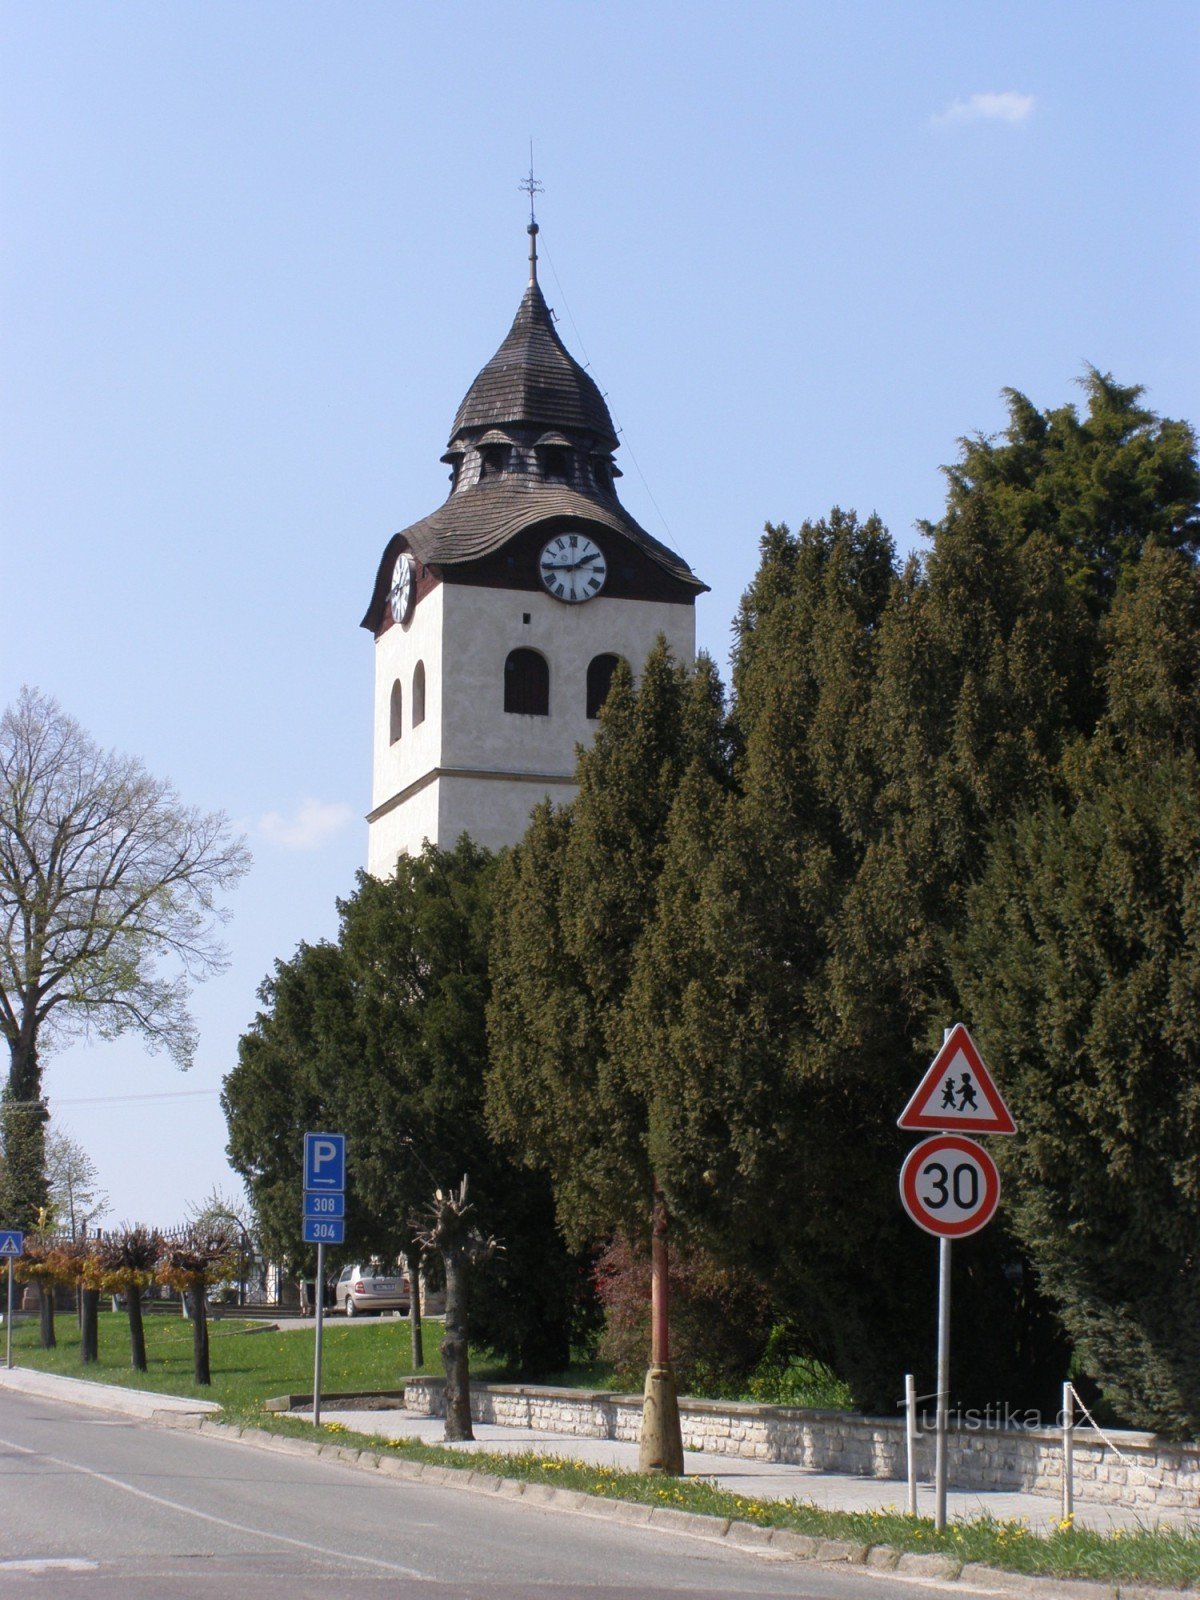 Bohuslavice - crkva sv. Nikole sa zvonom